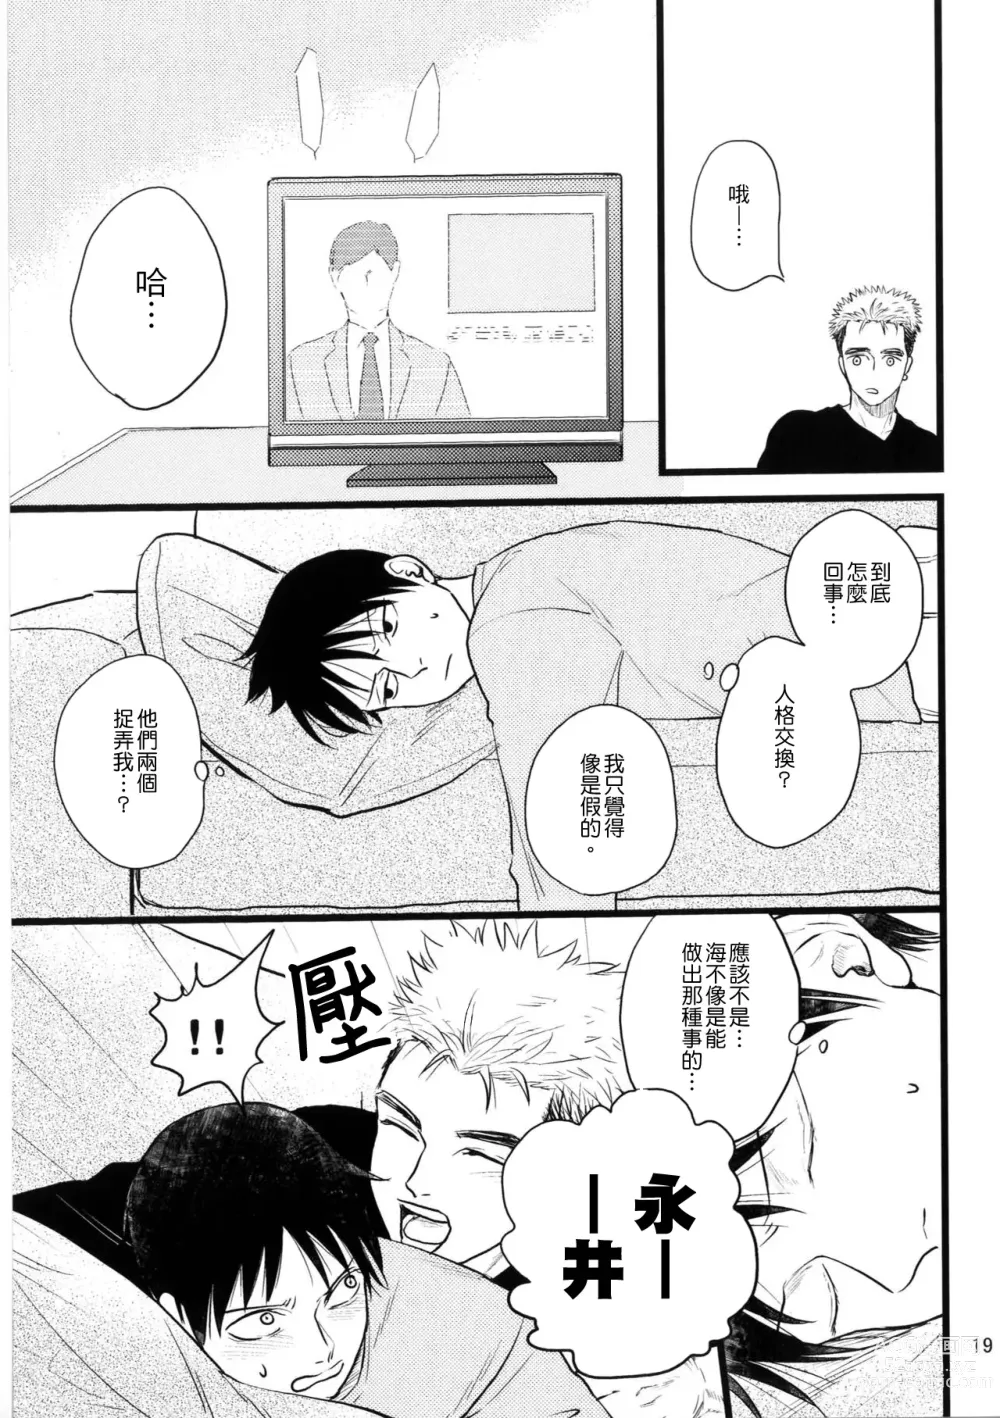 Page 17 of doujinshi Umi ga Nakano de Nakano ga Umi de